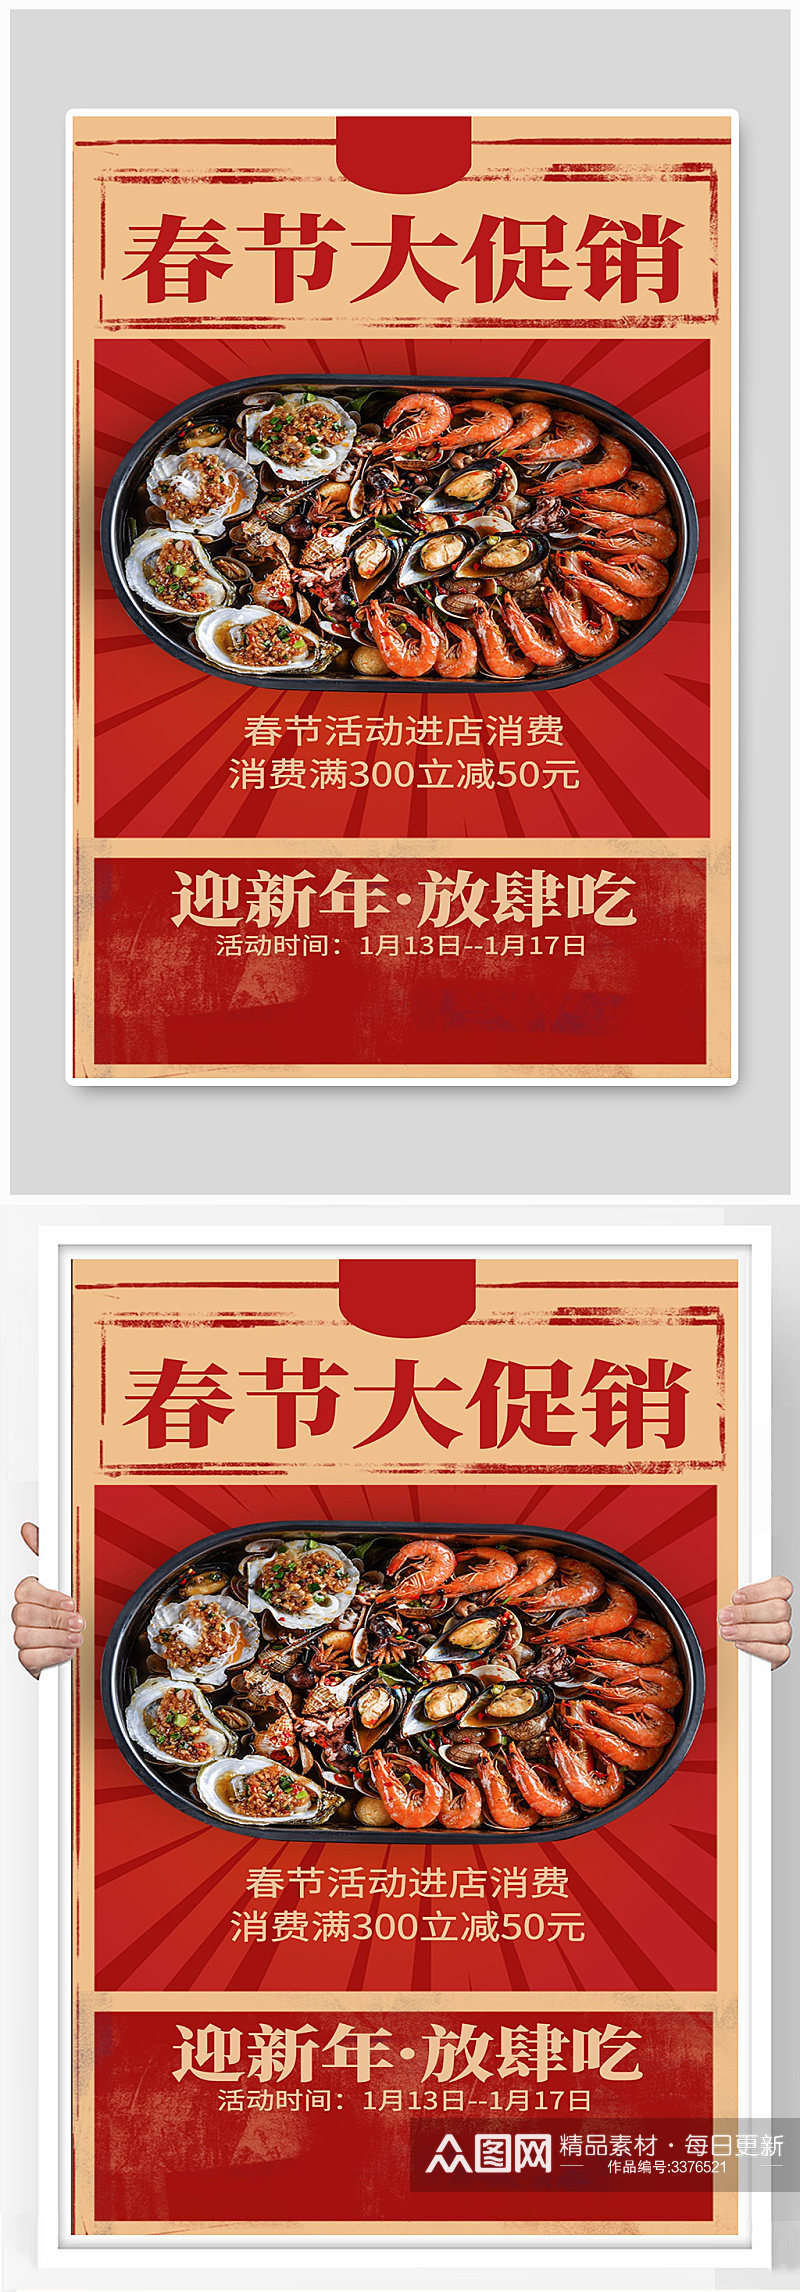 春节大促销海鲜小龙虾麻辣吃货夜宵海报素材